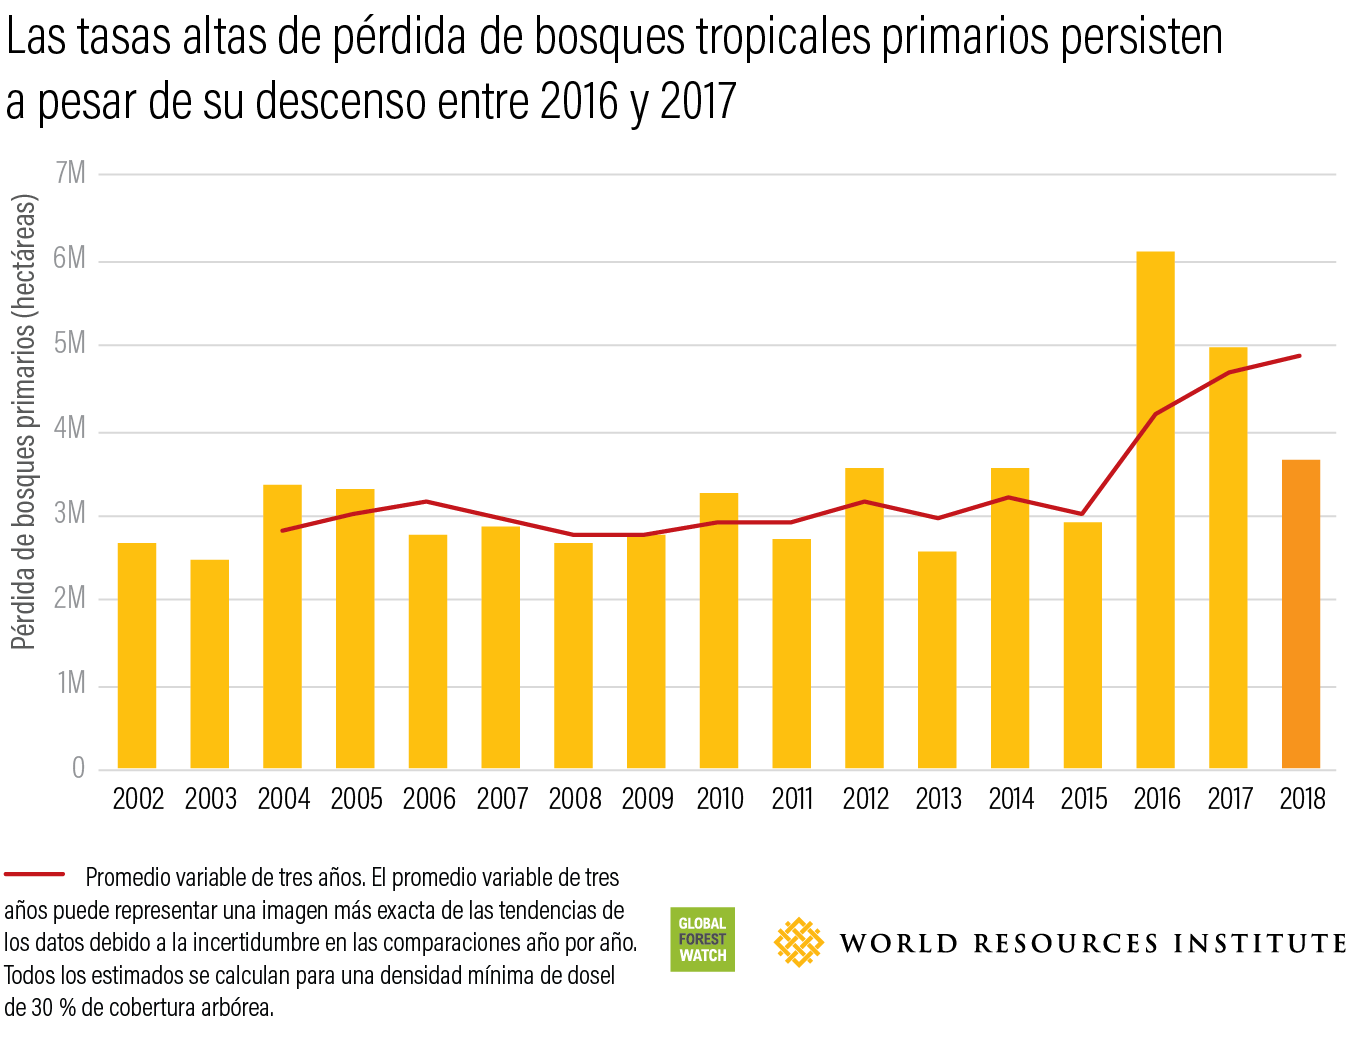 Las tasas altas de perdida se bosques tropicales primarios persisten a pesar de su descenso entre 2016 y 2017